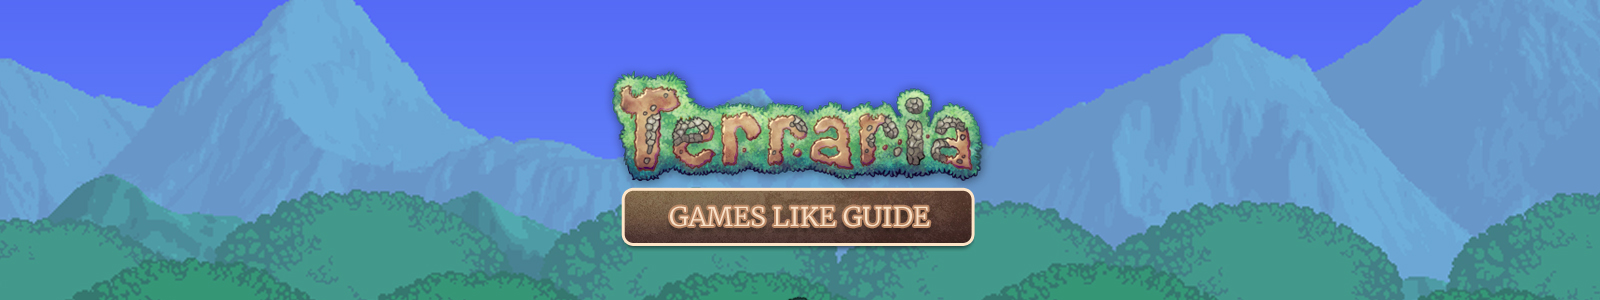 Terraria games like guide